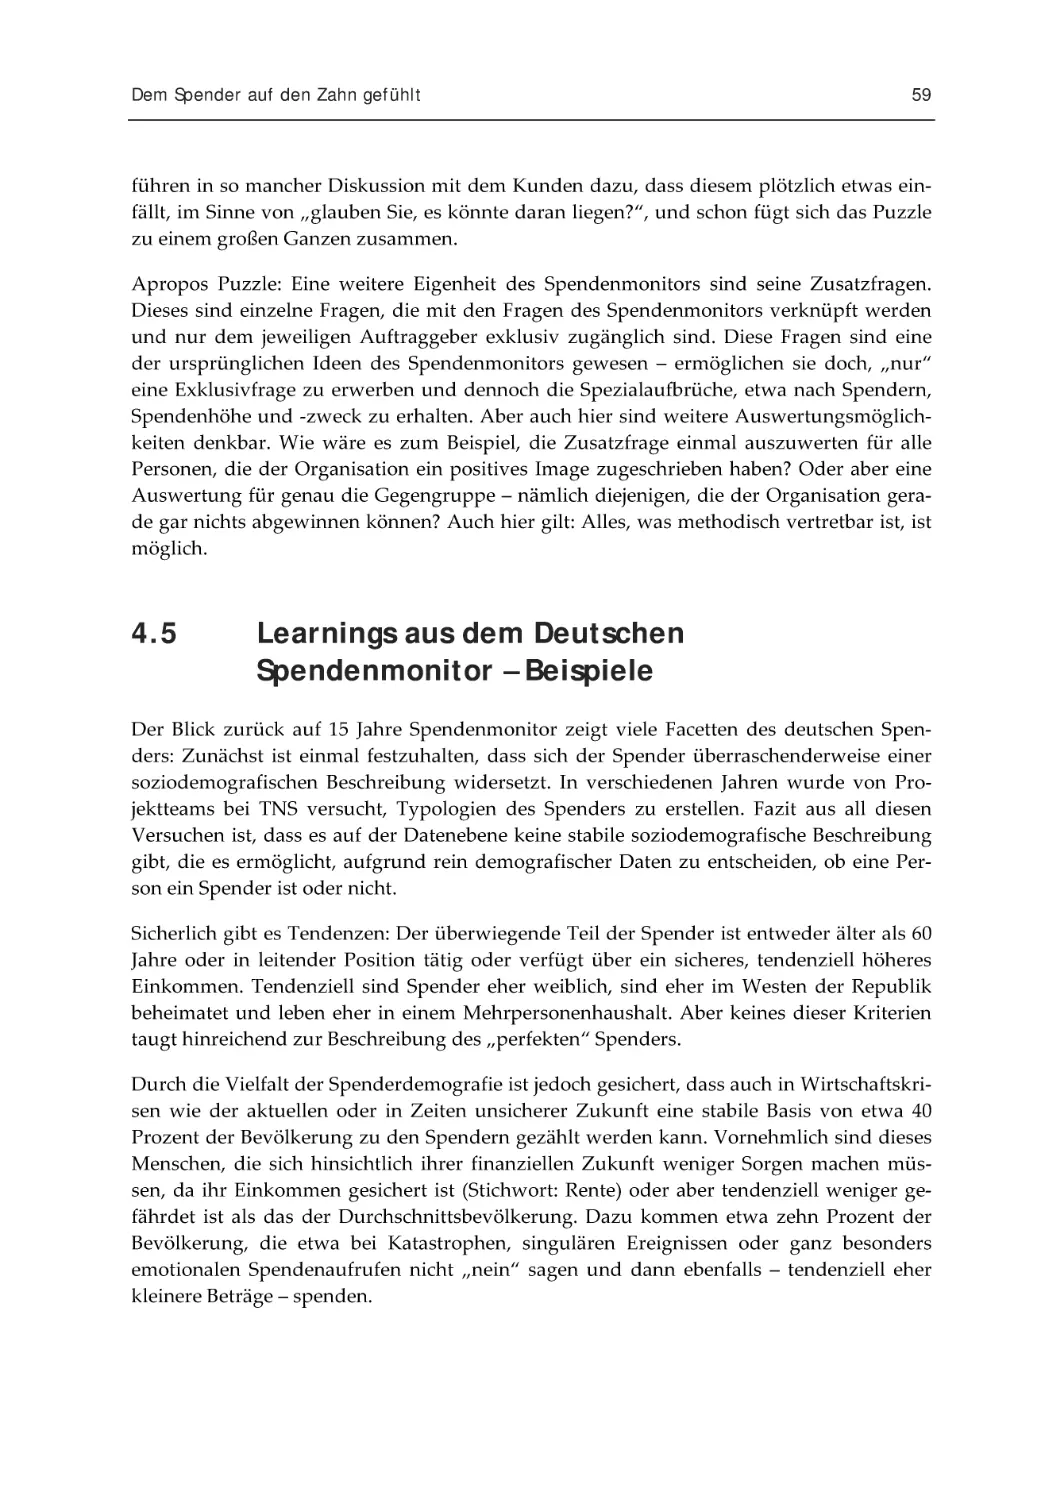 4.5 Learnings aus dem Deutschen Spendenmonitor – Beispiele